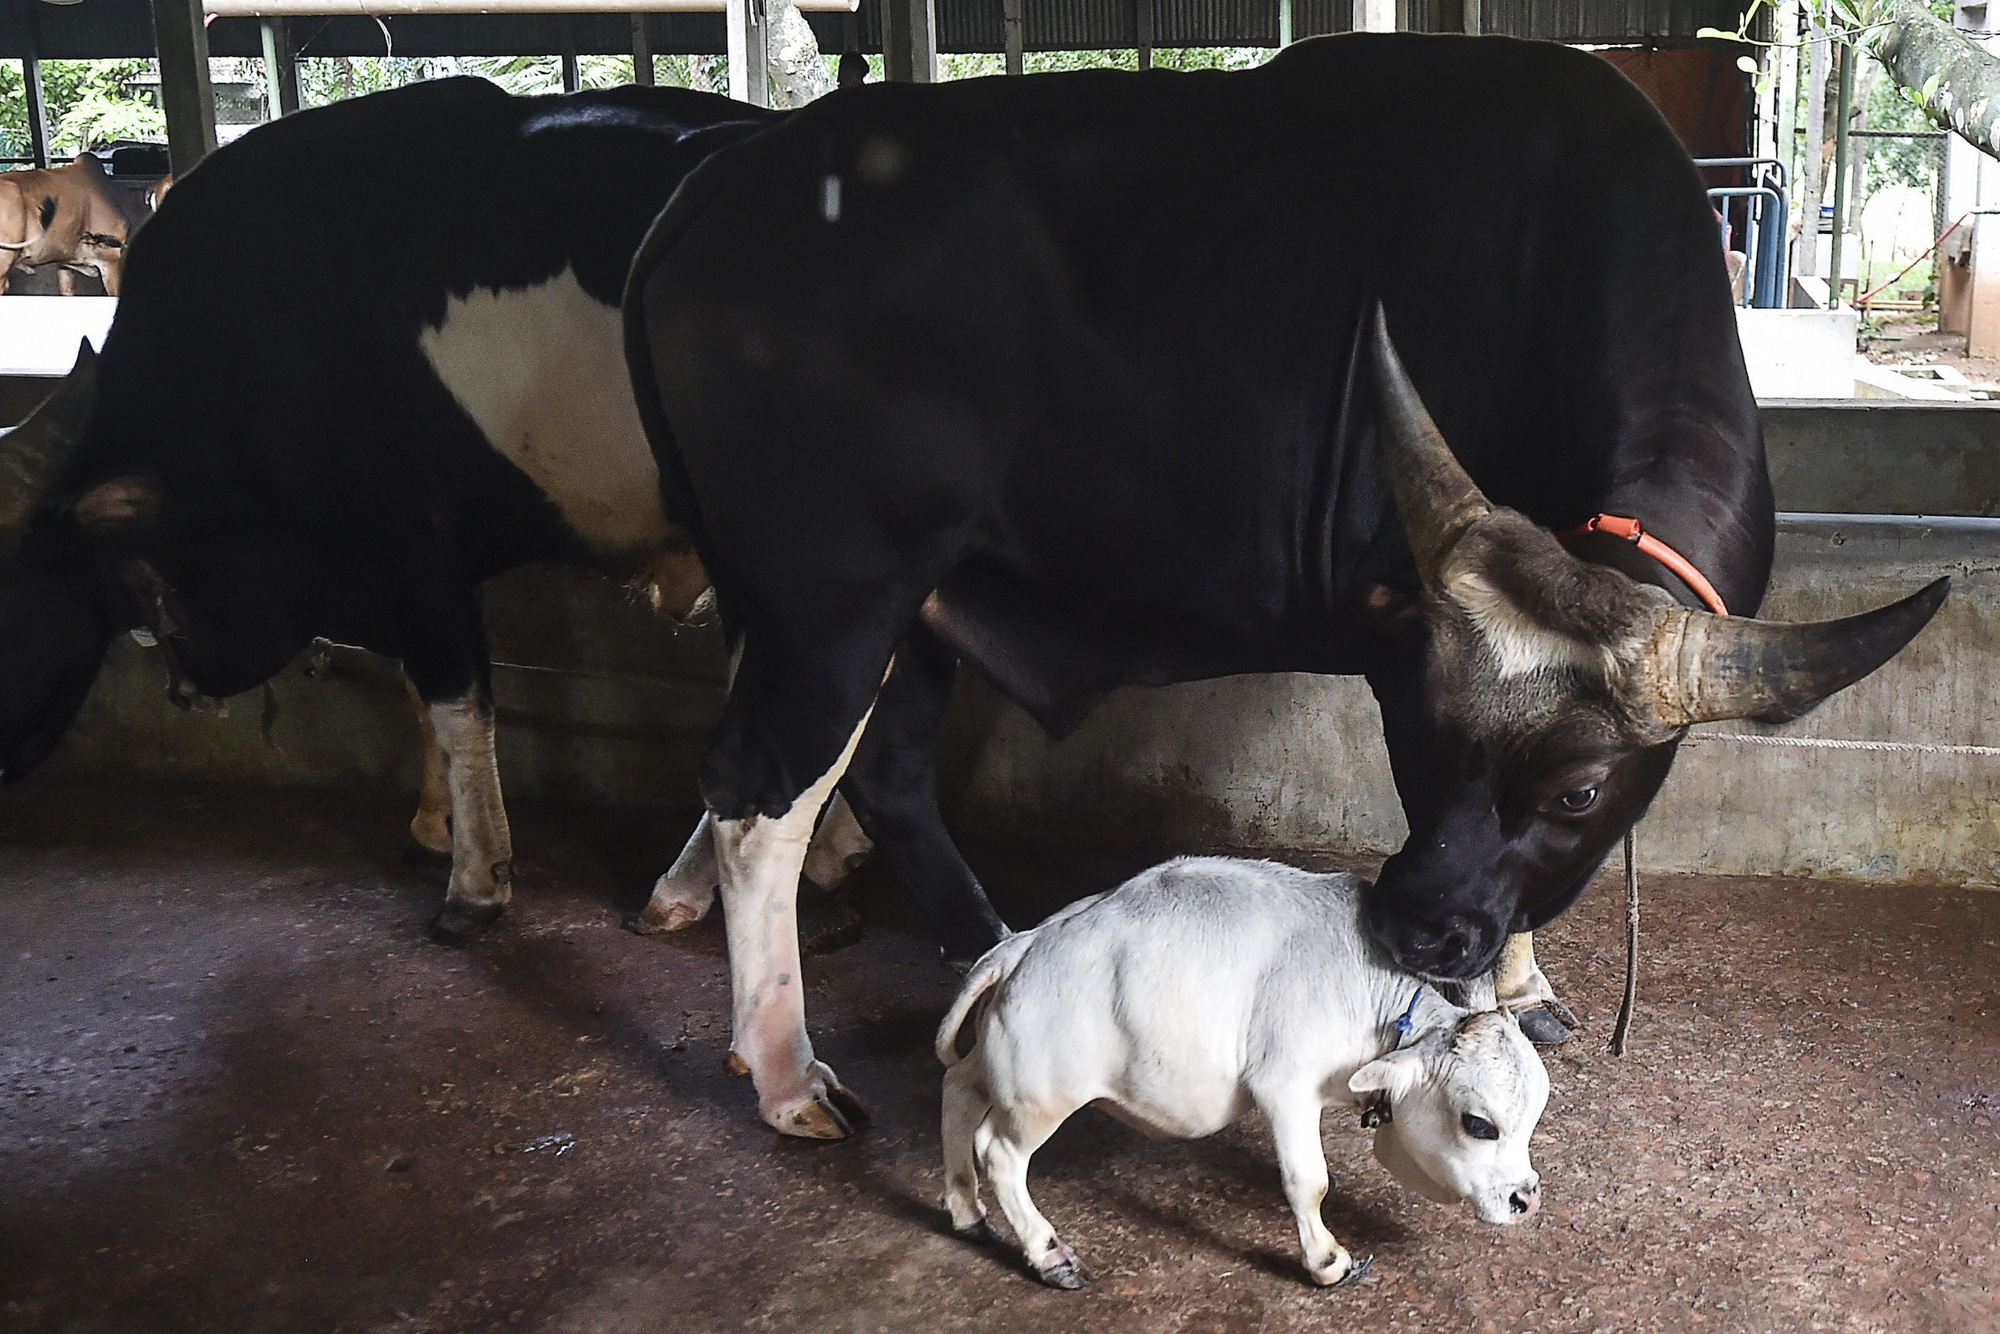 Dân làng lũ lượt kéo nhau đến xem con bò bé nhất thế giới, chỉ cao 51cm, nặng 26kg, dài chỉ &quot;nhõn&quot; 66cm - Ảnh 1.